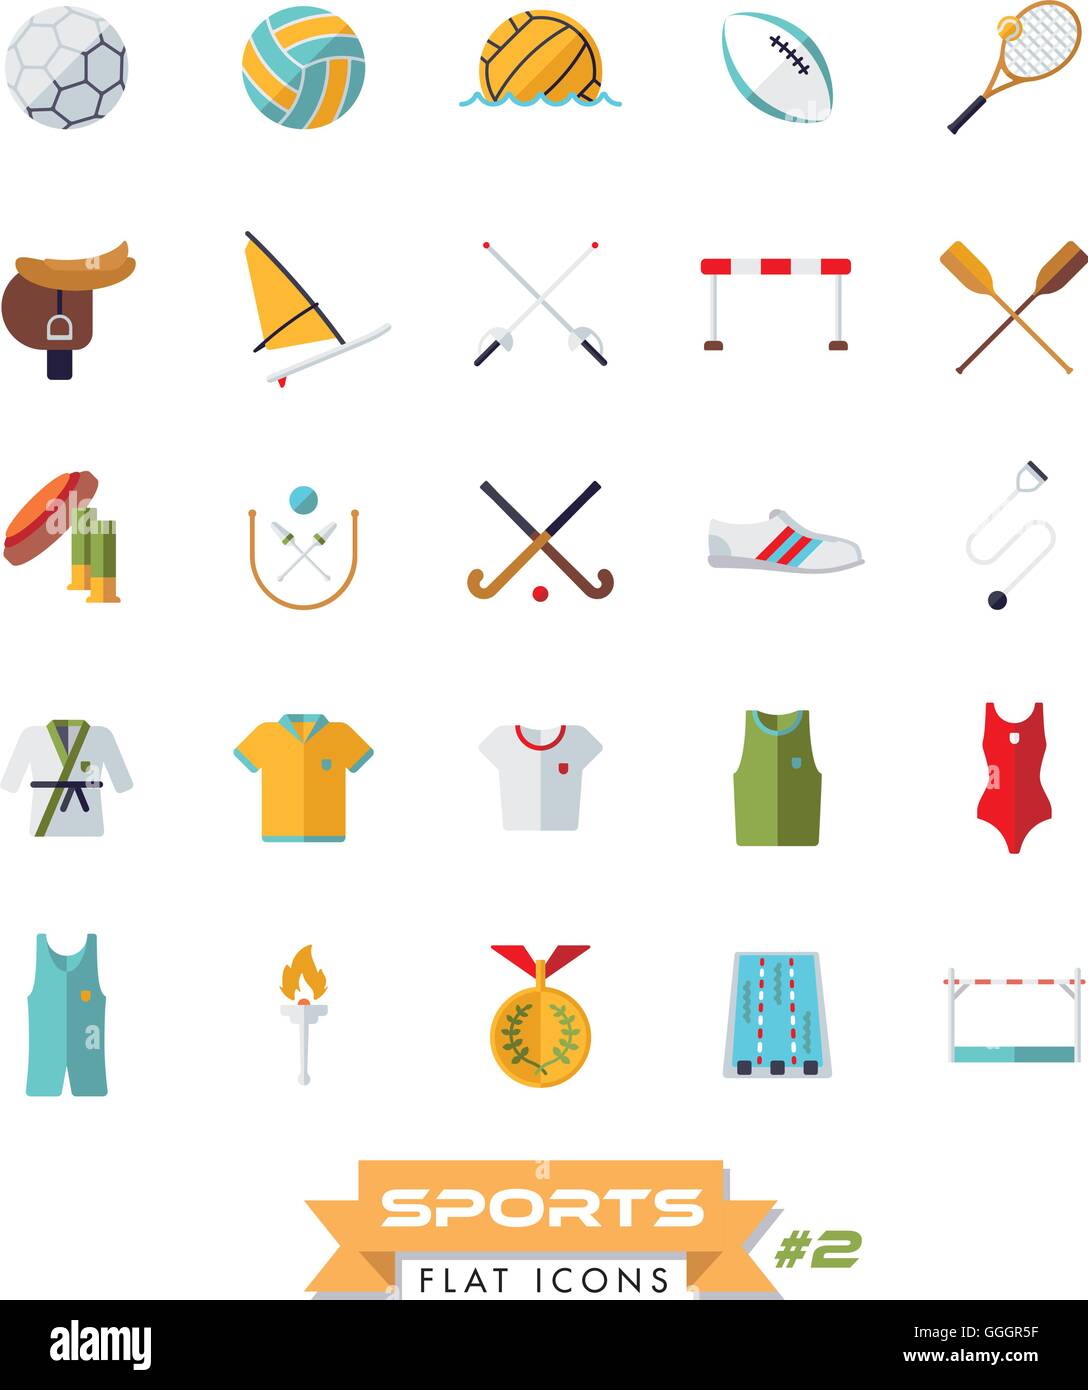 Sammlung von Sport-Icons, flache Bauweise, isoliert Stock Vektor